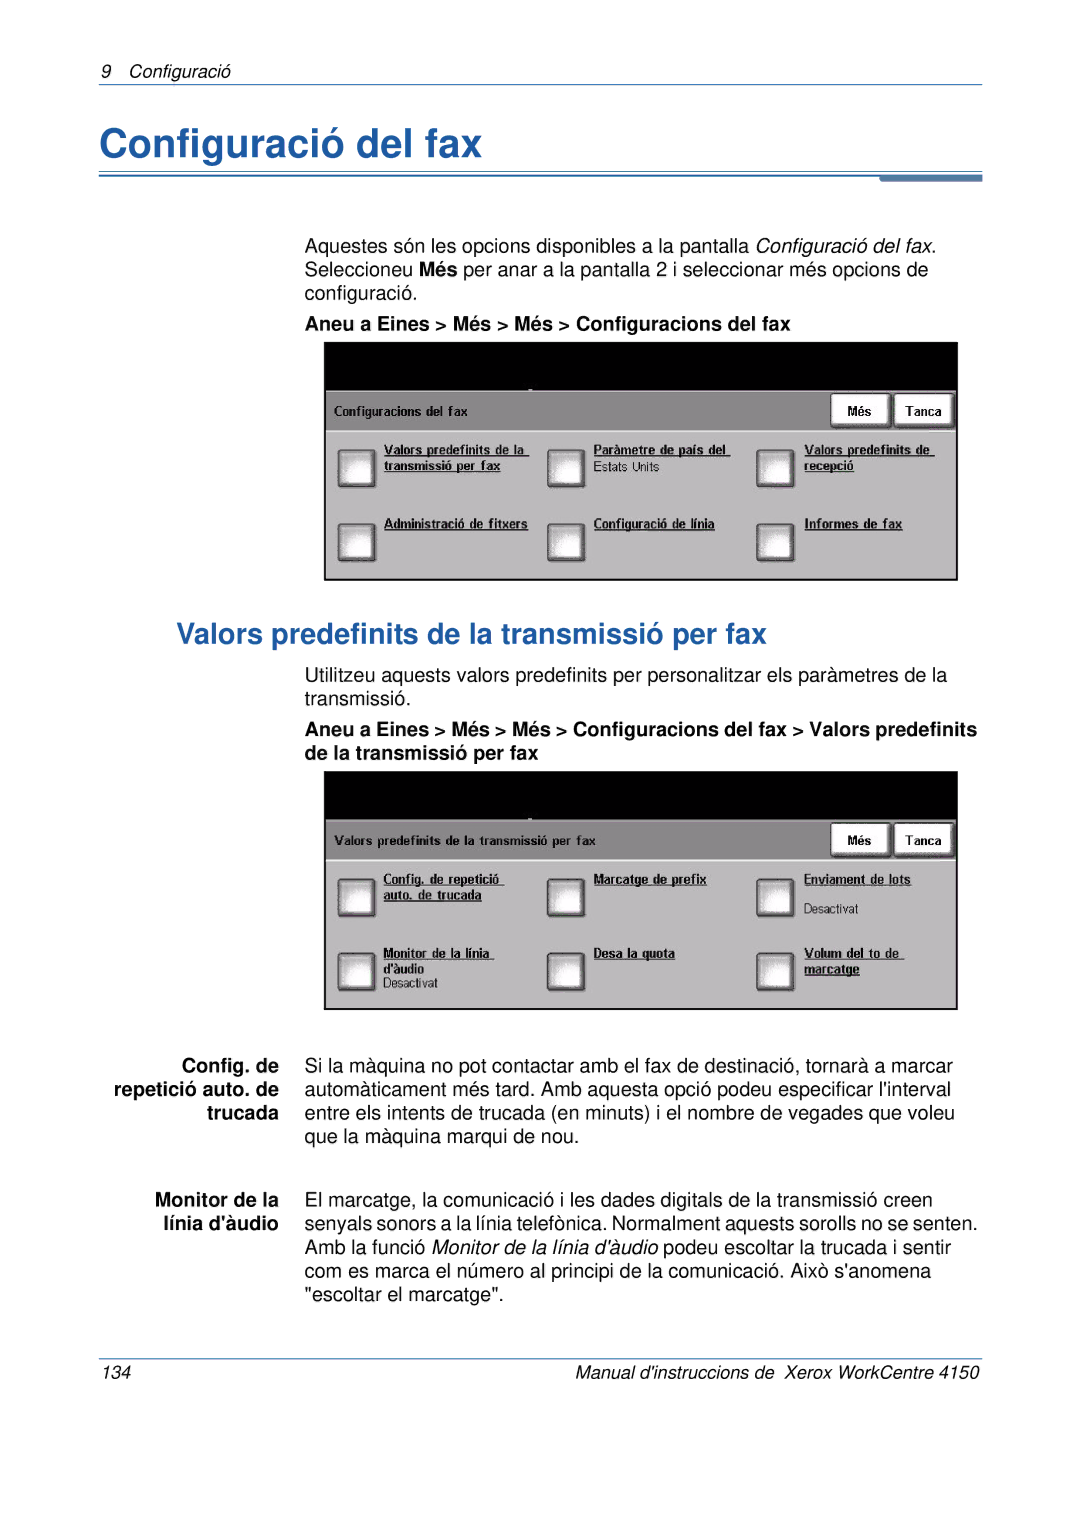 Xerox 5.0 24.03.06 manual Configuració del fax, Valors predefinits de la transmissió per fax 